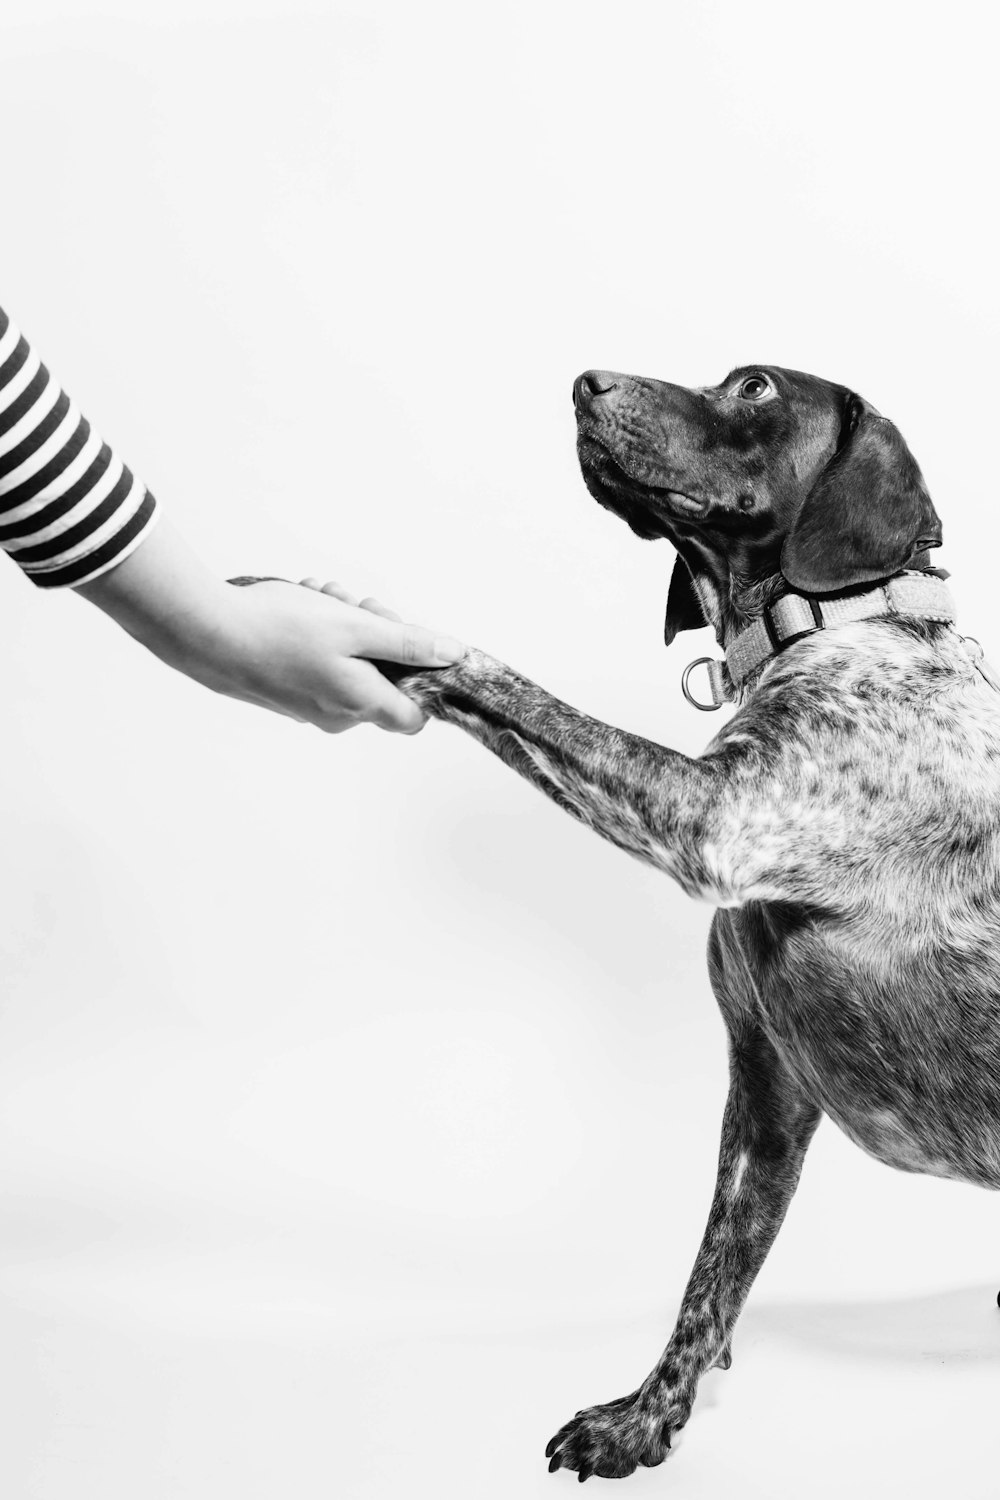 Foto en escala de grises de una persona y un perro tomados de la mano